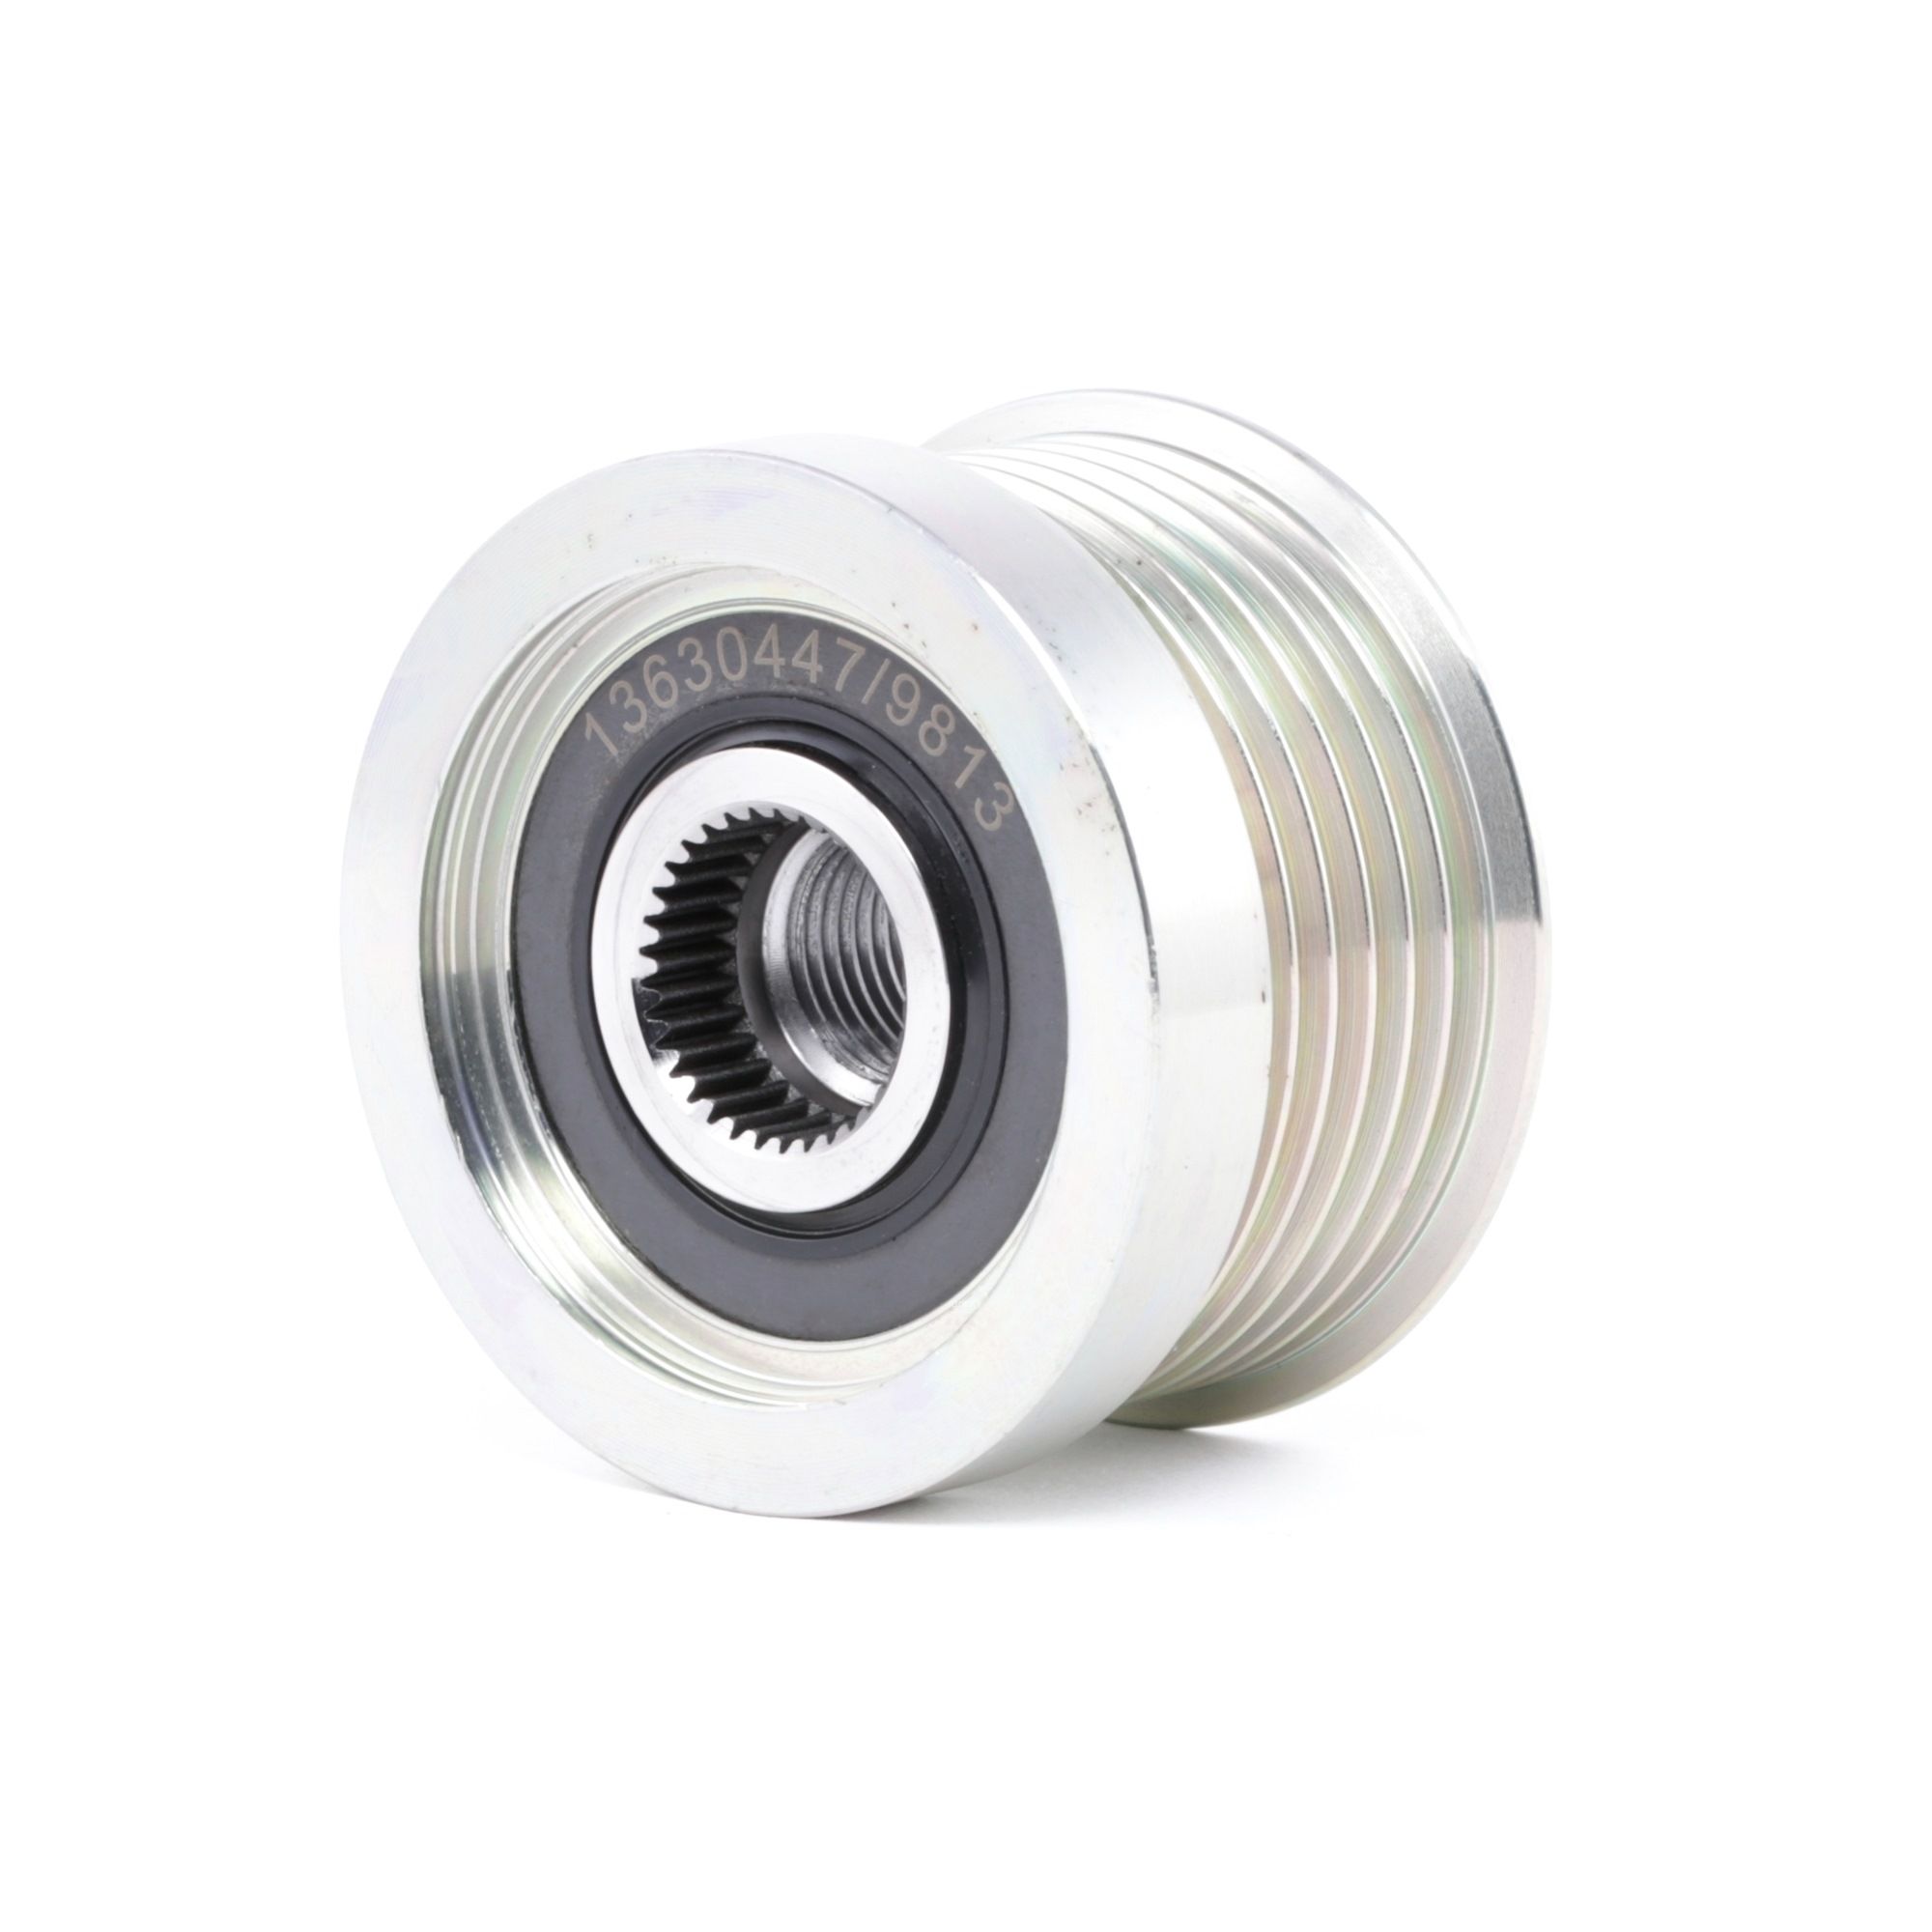 Image of RIDEX Freewheel Clutch VOLVO 1390F0011 30658085,30658087,30667787 Freewheel Clutch Alternator,Flexible Coupling Sleeve,Freewheel Clutch, alternator